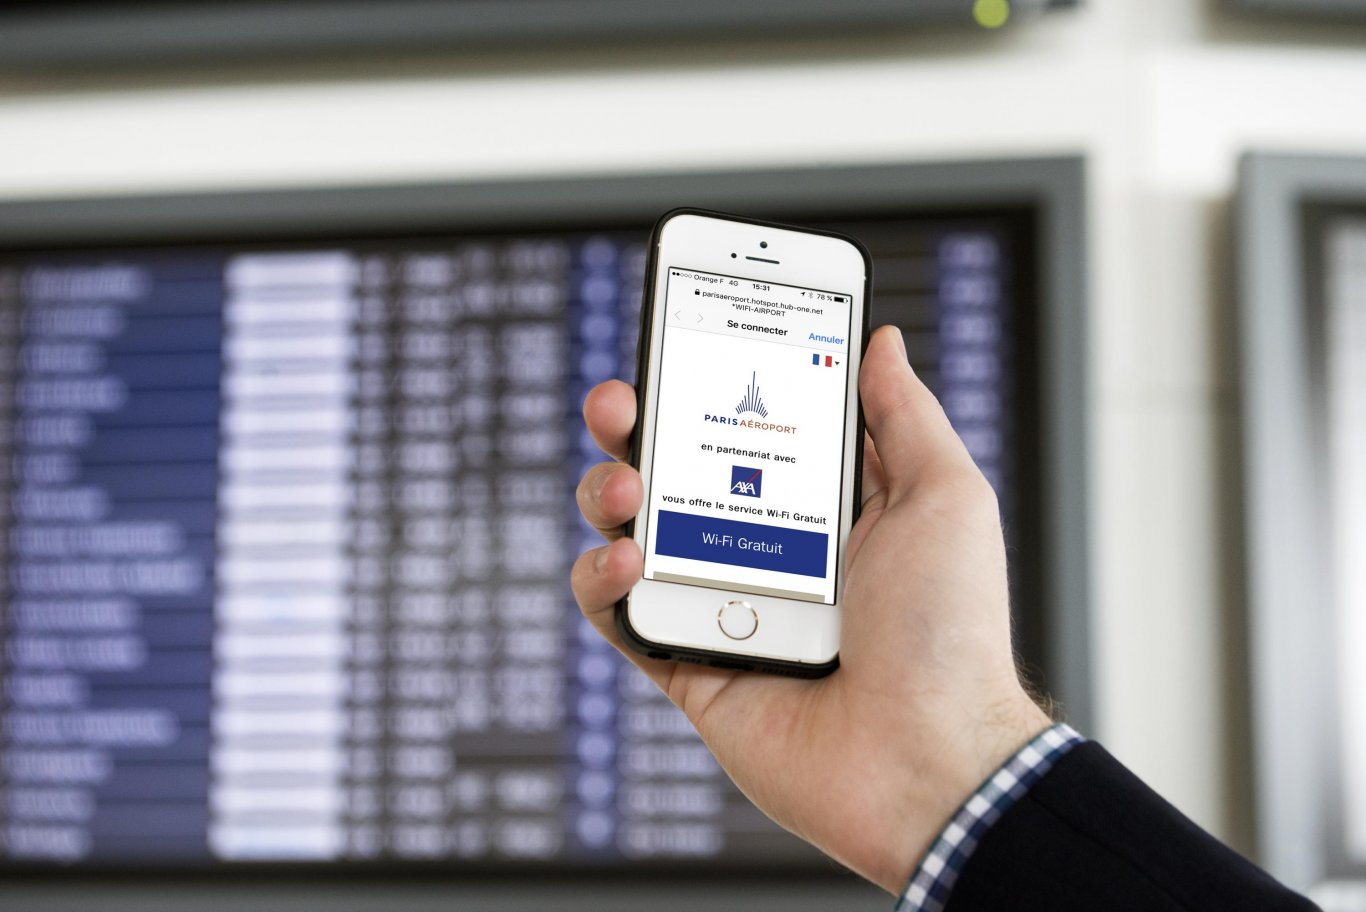 Geolocalización y email marketing en aeropuertos